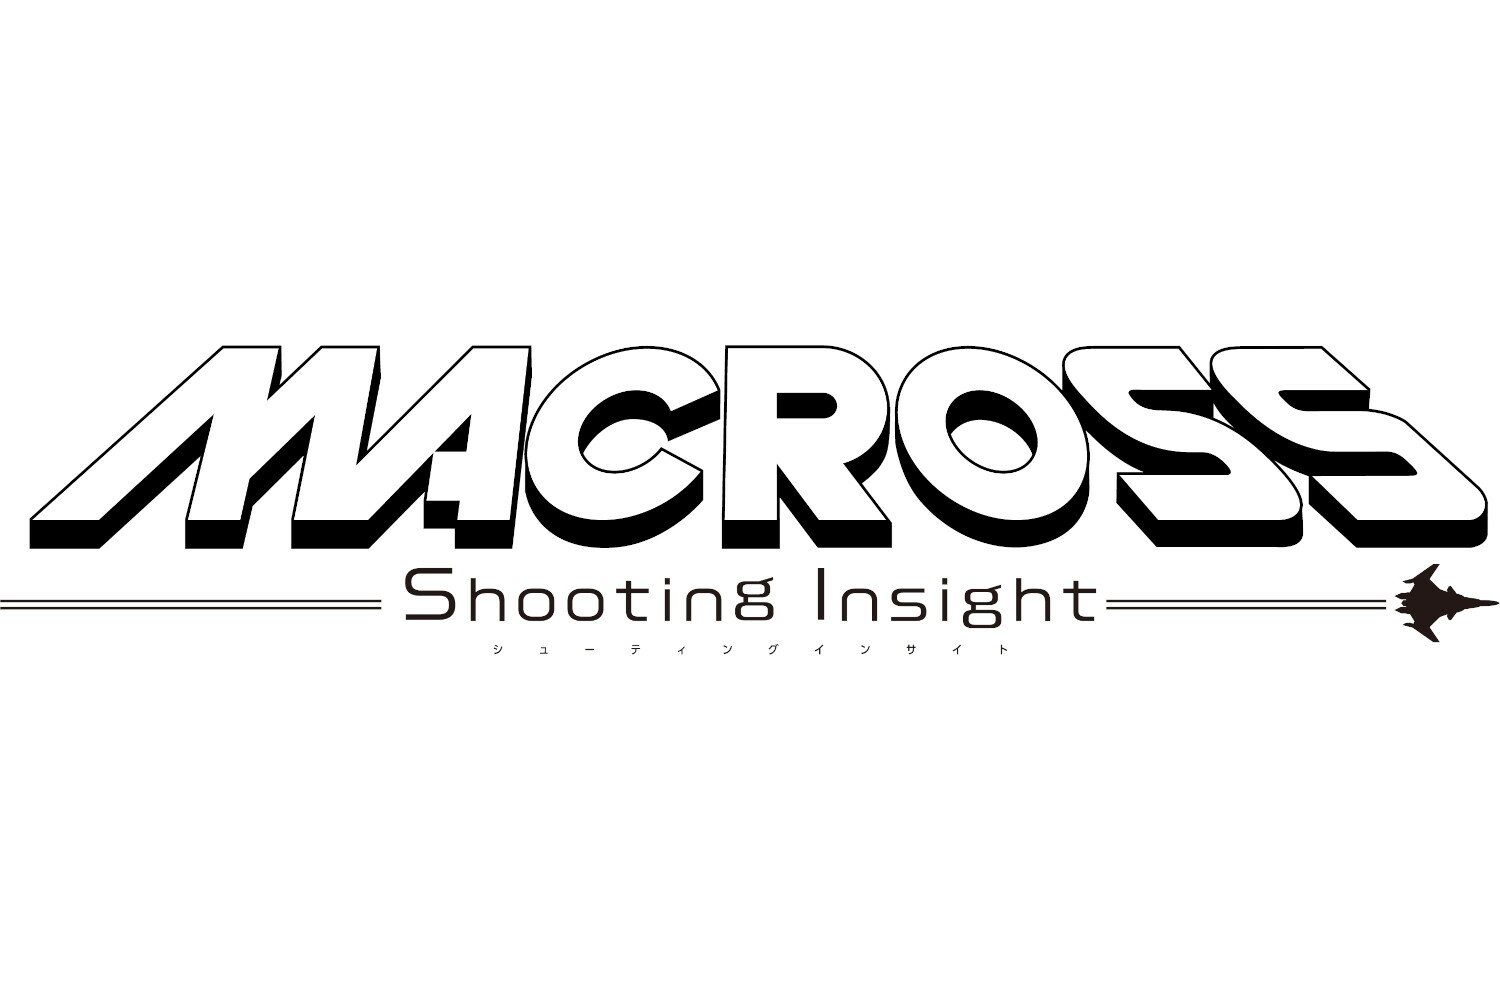 【楽天ブックス限定特典+特典】マクロス -Shooting Insight- 限定版 PS4版(B2布ポスター(『マクロス7』熱気バサラ＆ミレーヌ・フレア・ジーナス)+【初回生産封入特典】4大特典)